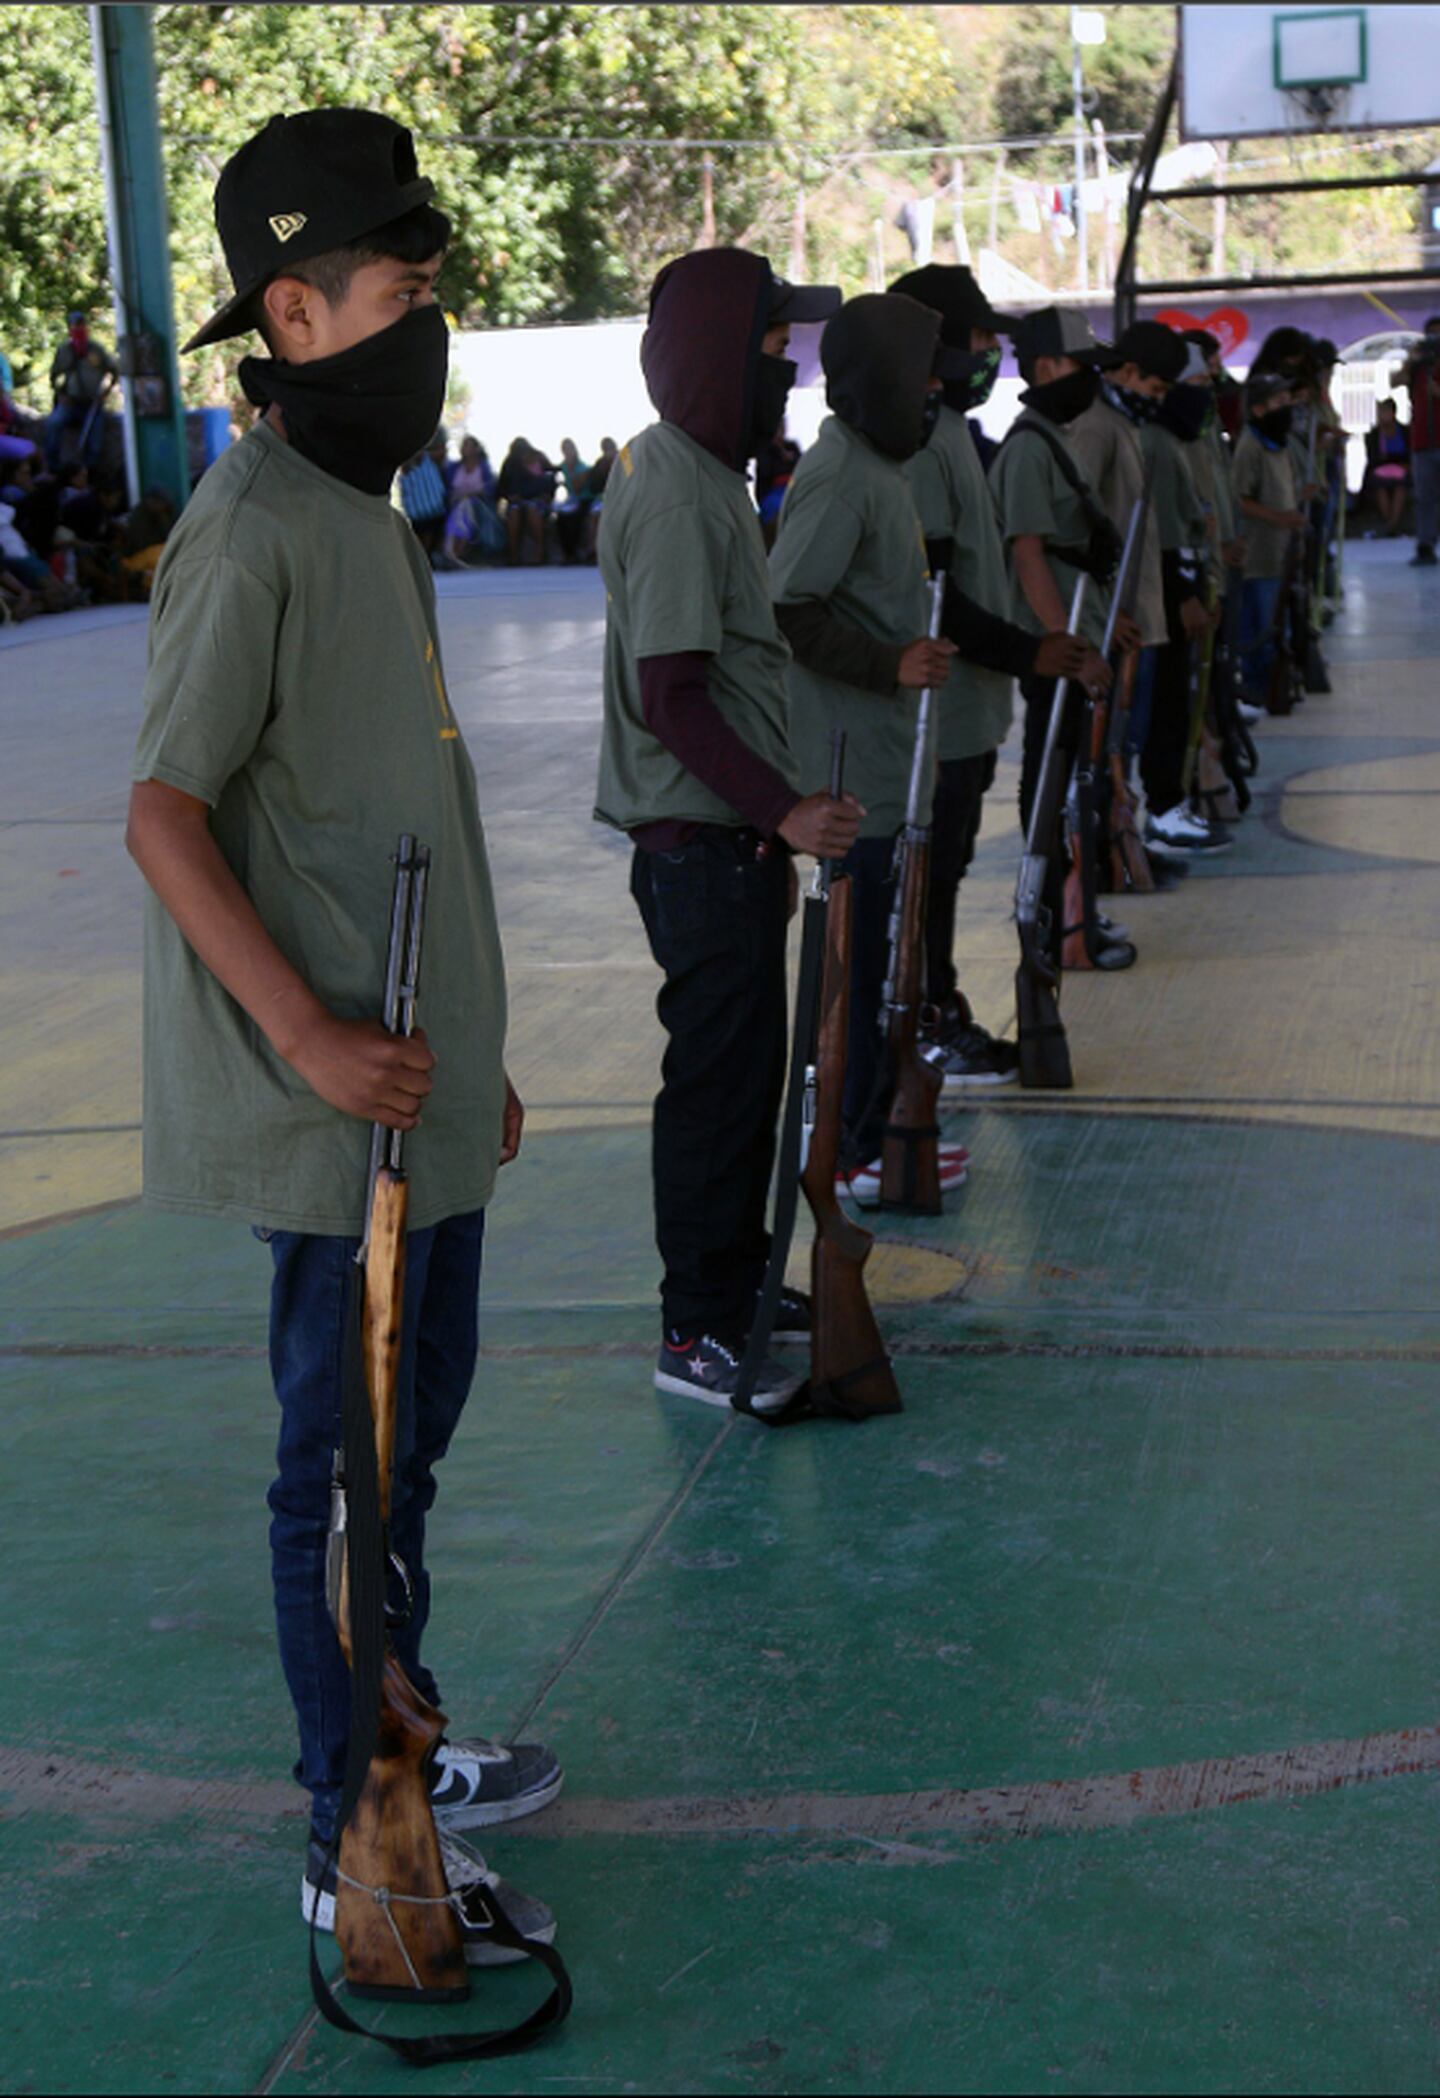 Niños toman armas en Guerrero para defender a la comunidad